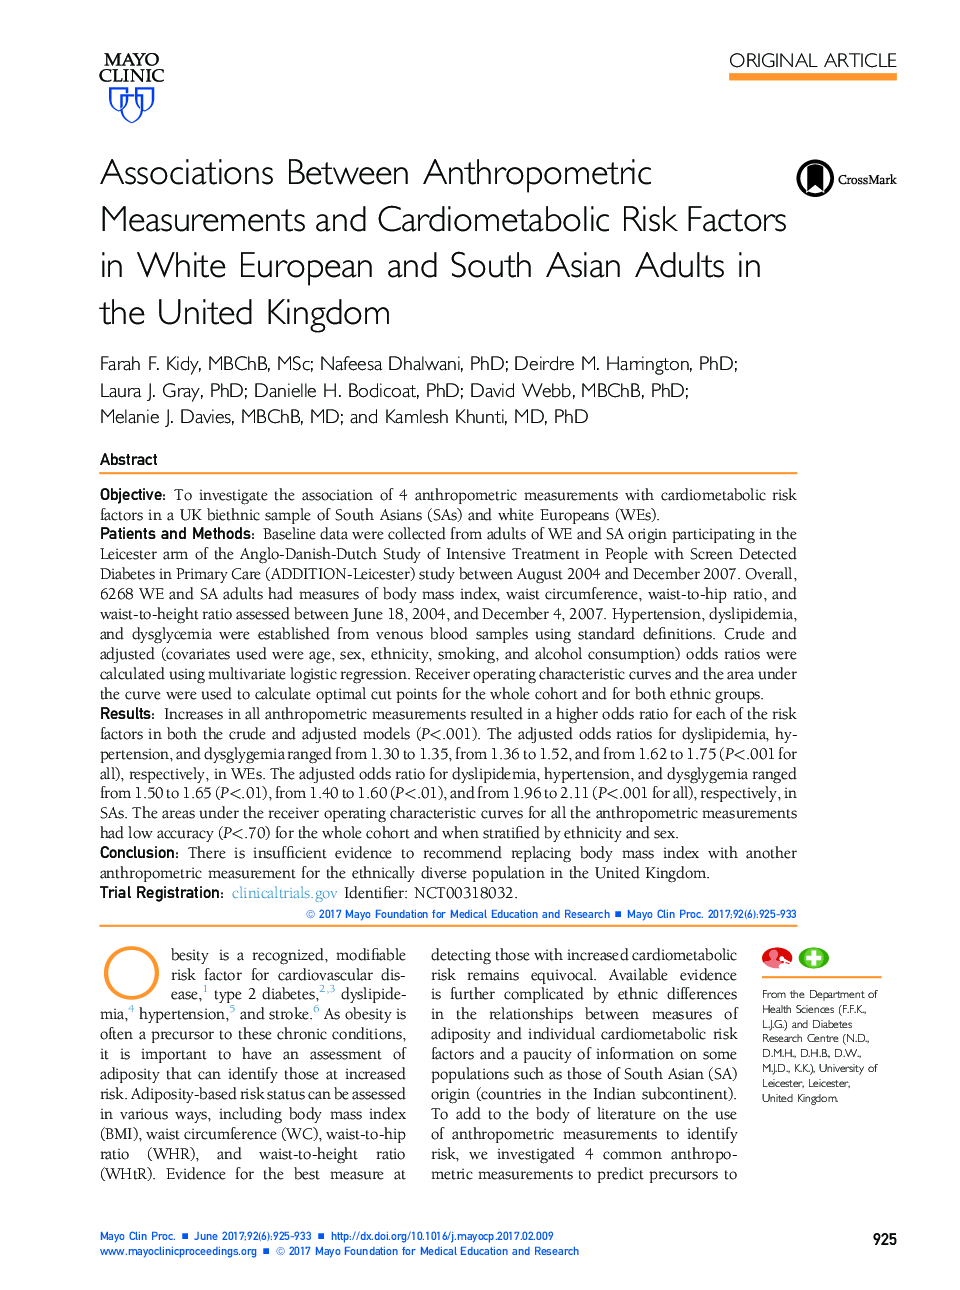 ارتباط بین اندازه گیری های تن سنجی و عوامل خطرزای قلب و عروق در بزرگسالان اروپایی و آسیای جنوب آسیا در انگلستان 